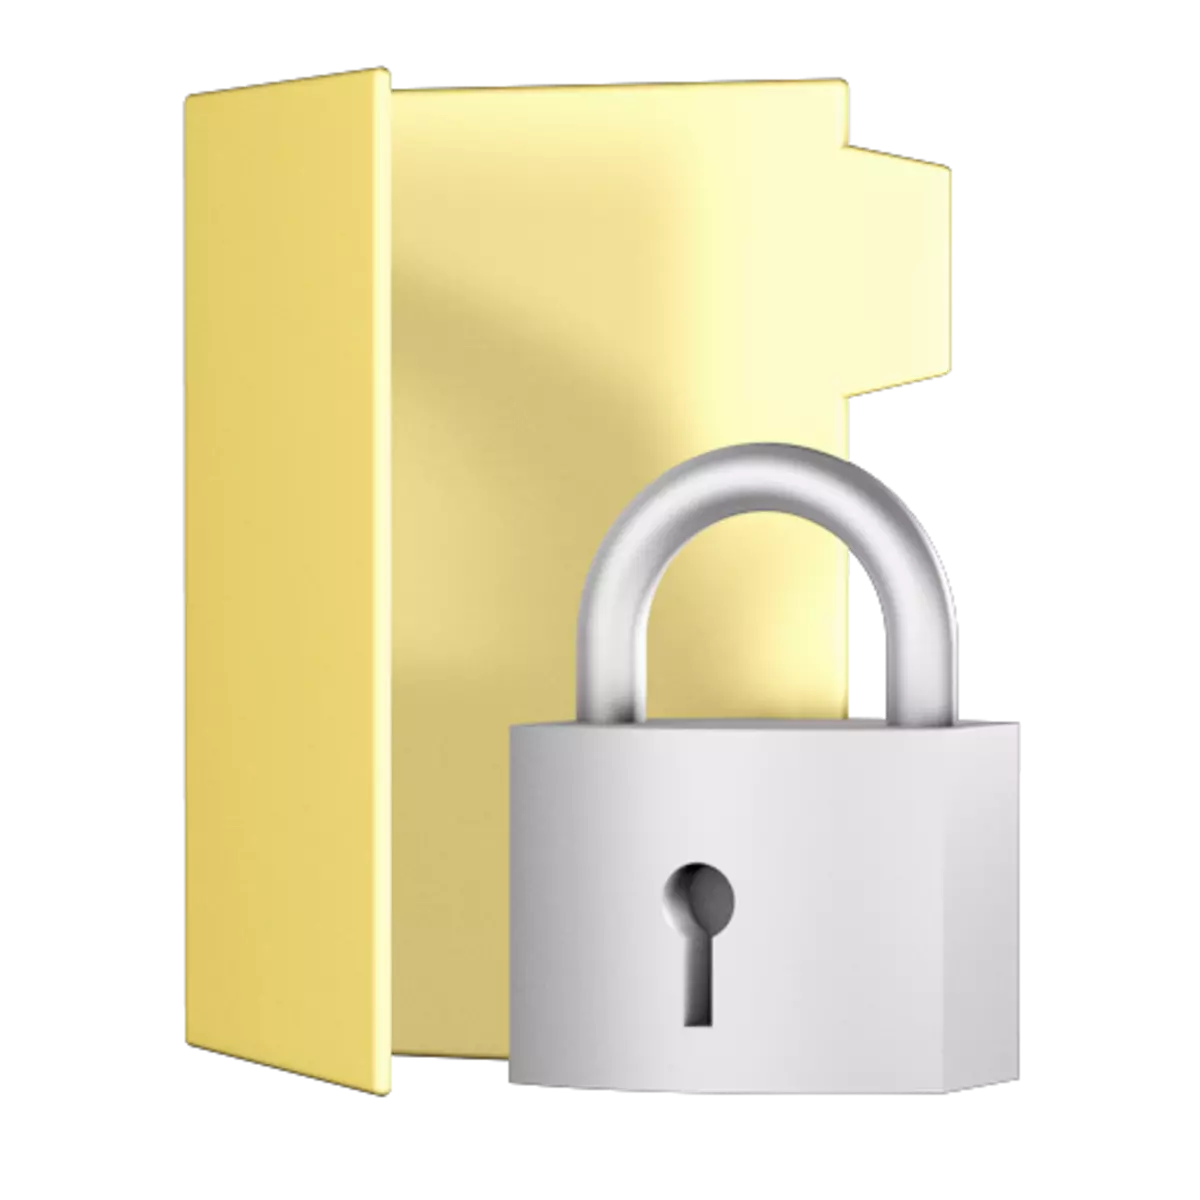 Programet për dosjet dhe skedarët e encryption